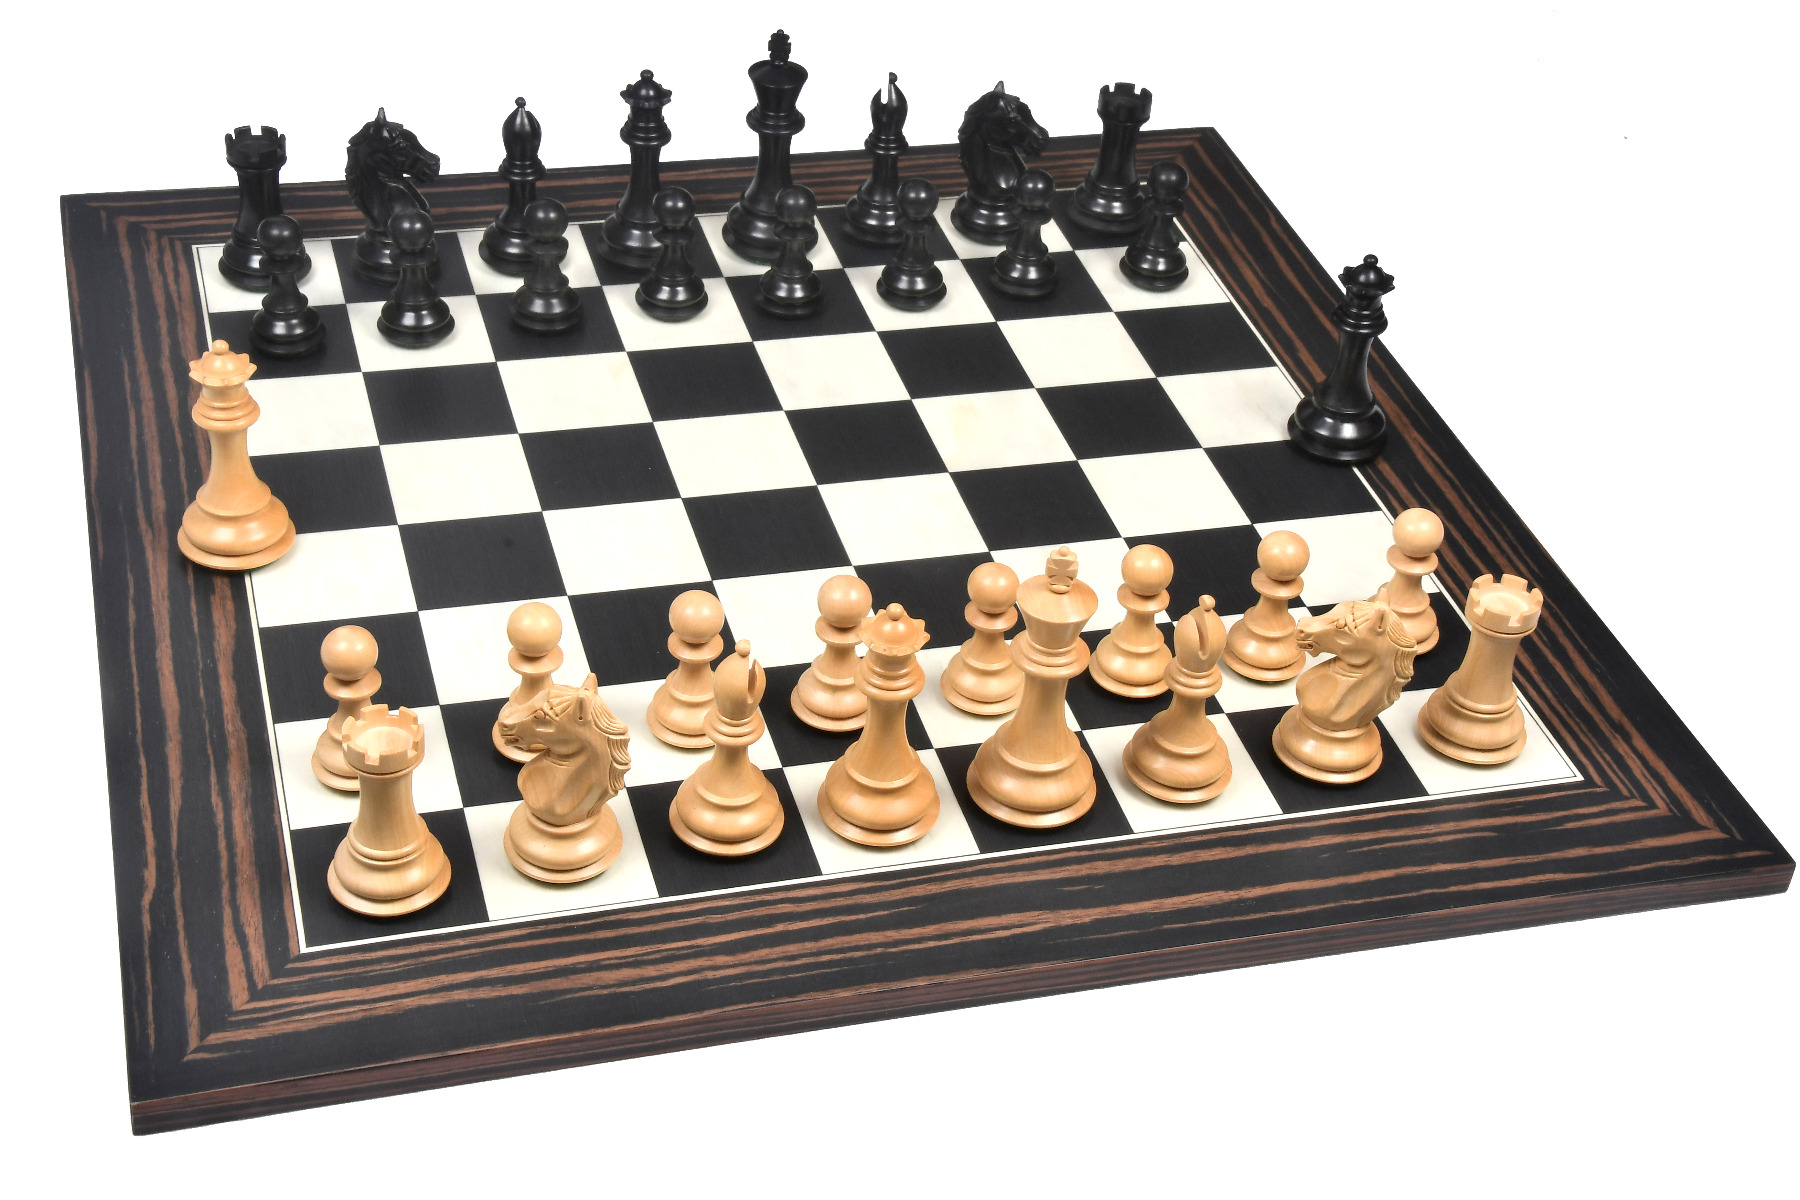 En bois grand palissandre Chess Set CLASSIC STAUNTON Handmade pondérée PIECES 20" 